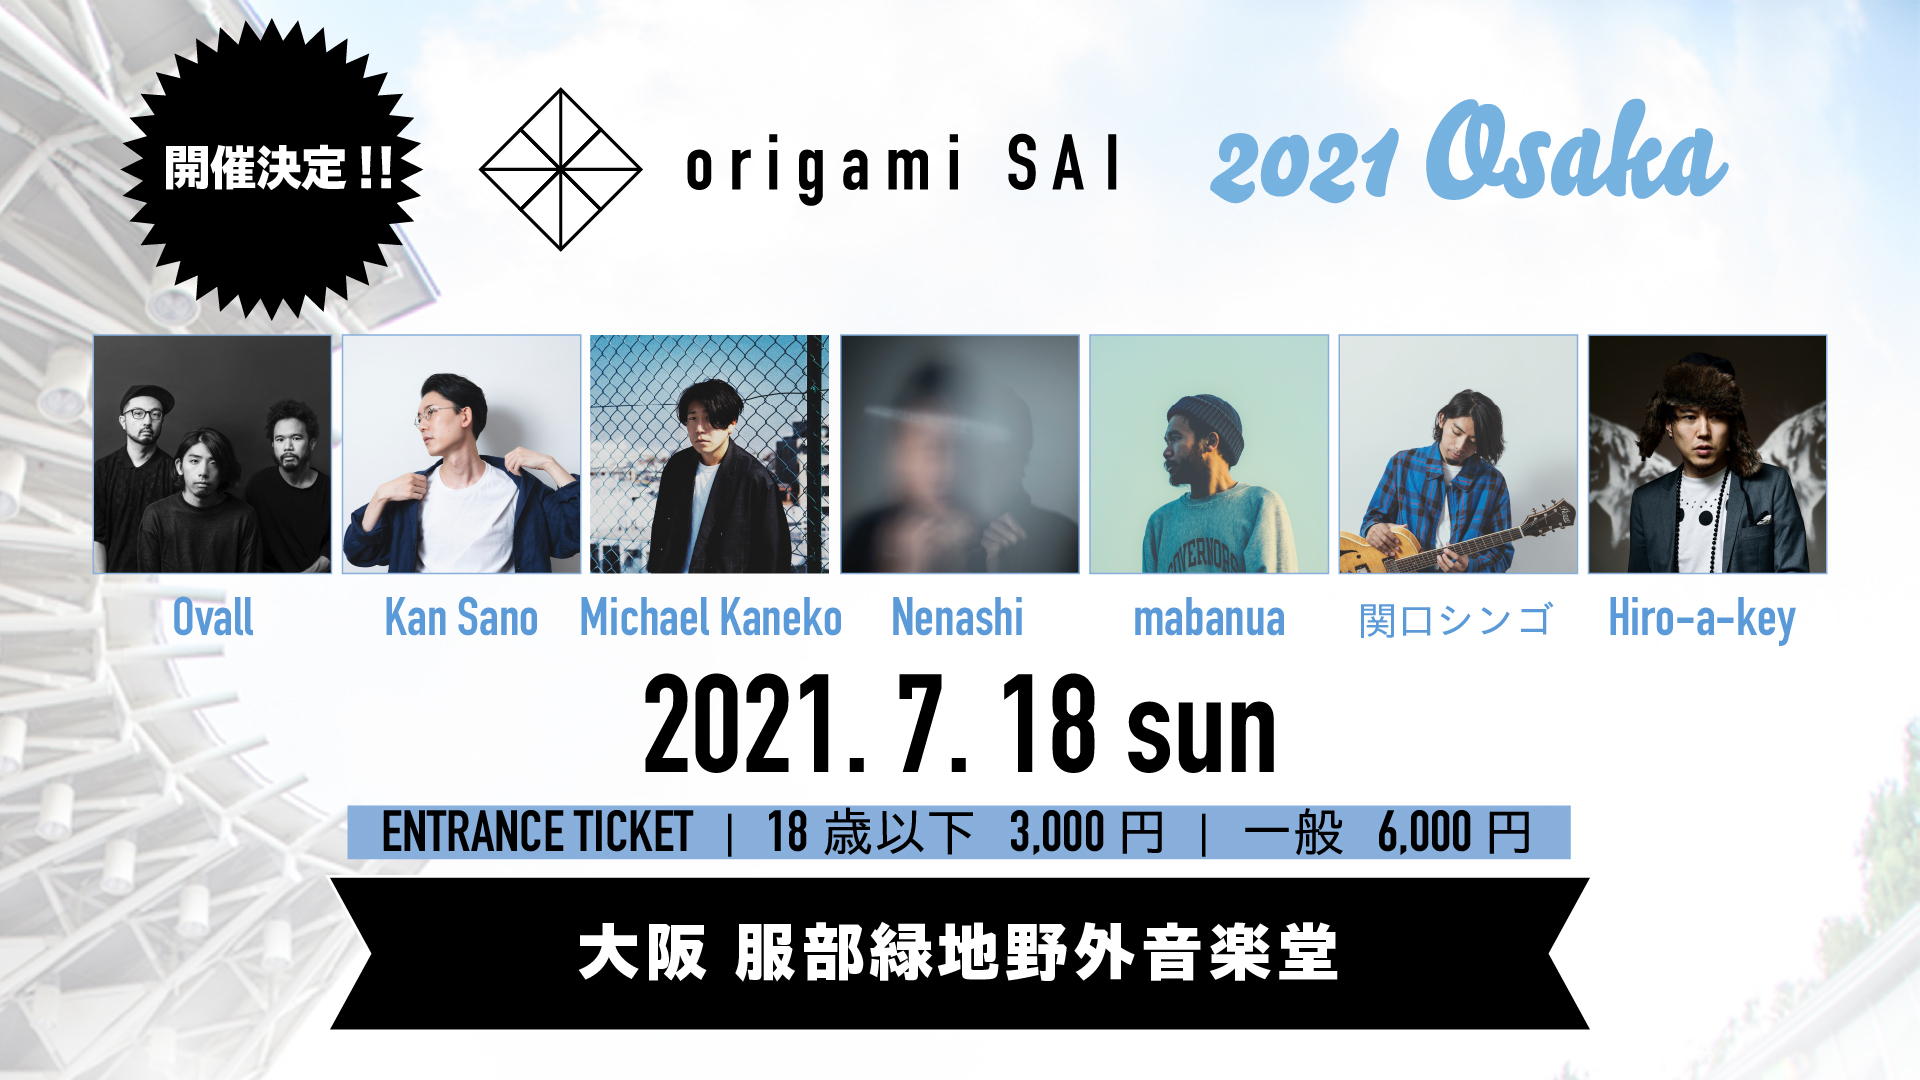 『origami SAI 2021 Osaka』